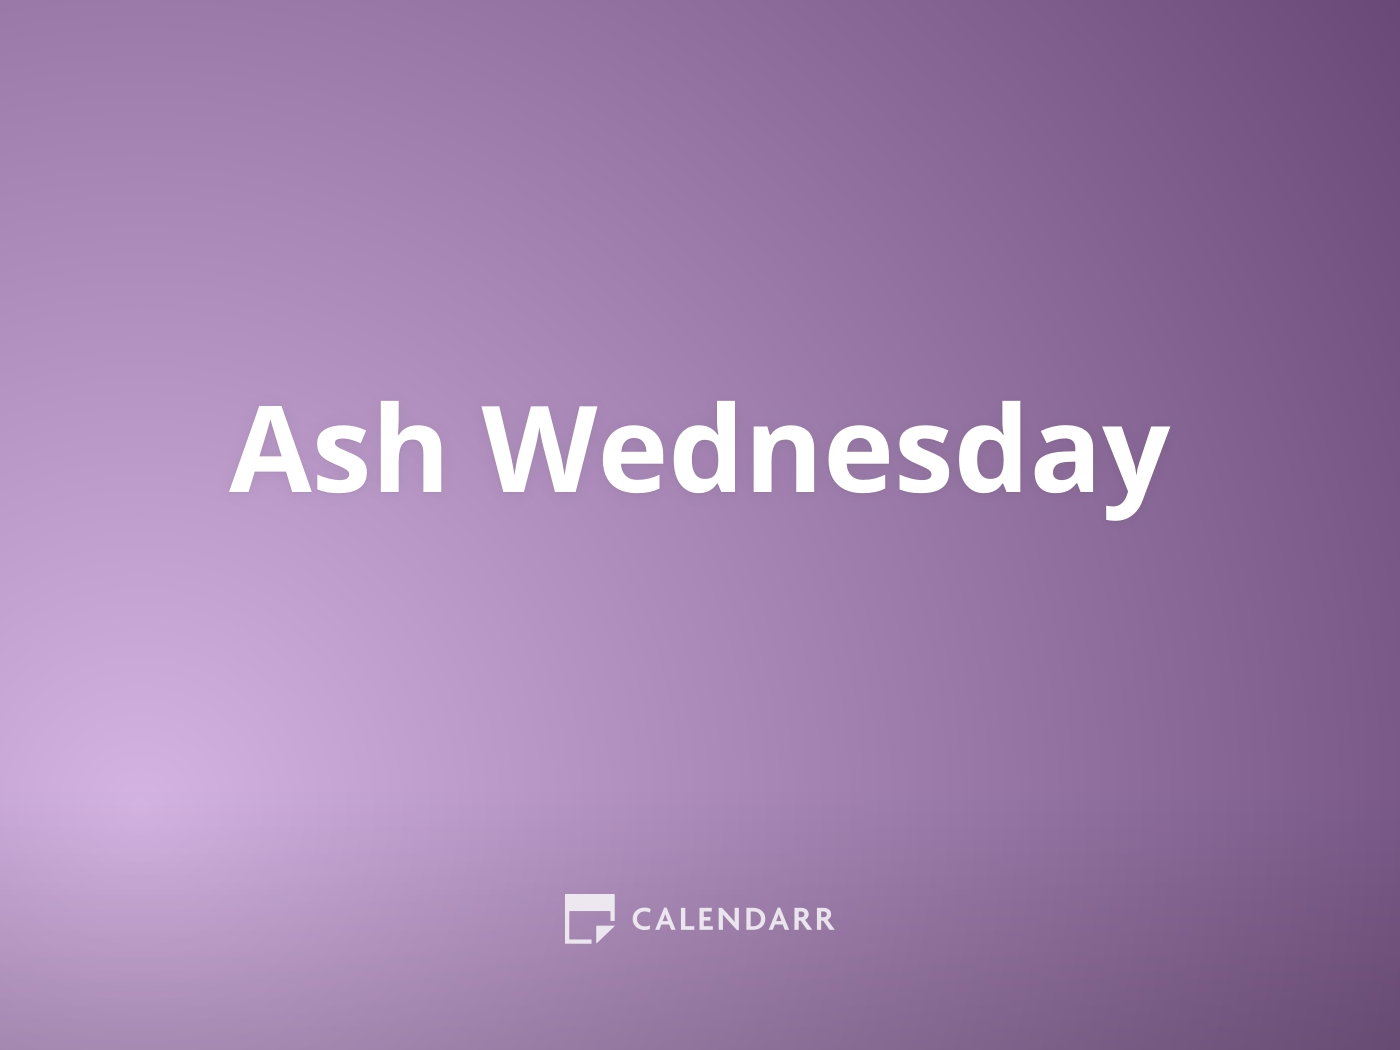 ash-wednesday-february-22-calendarr